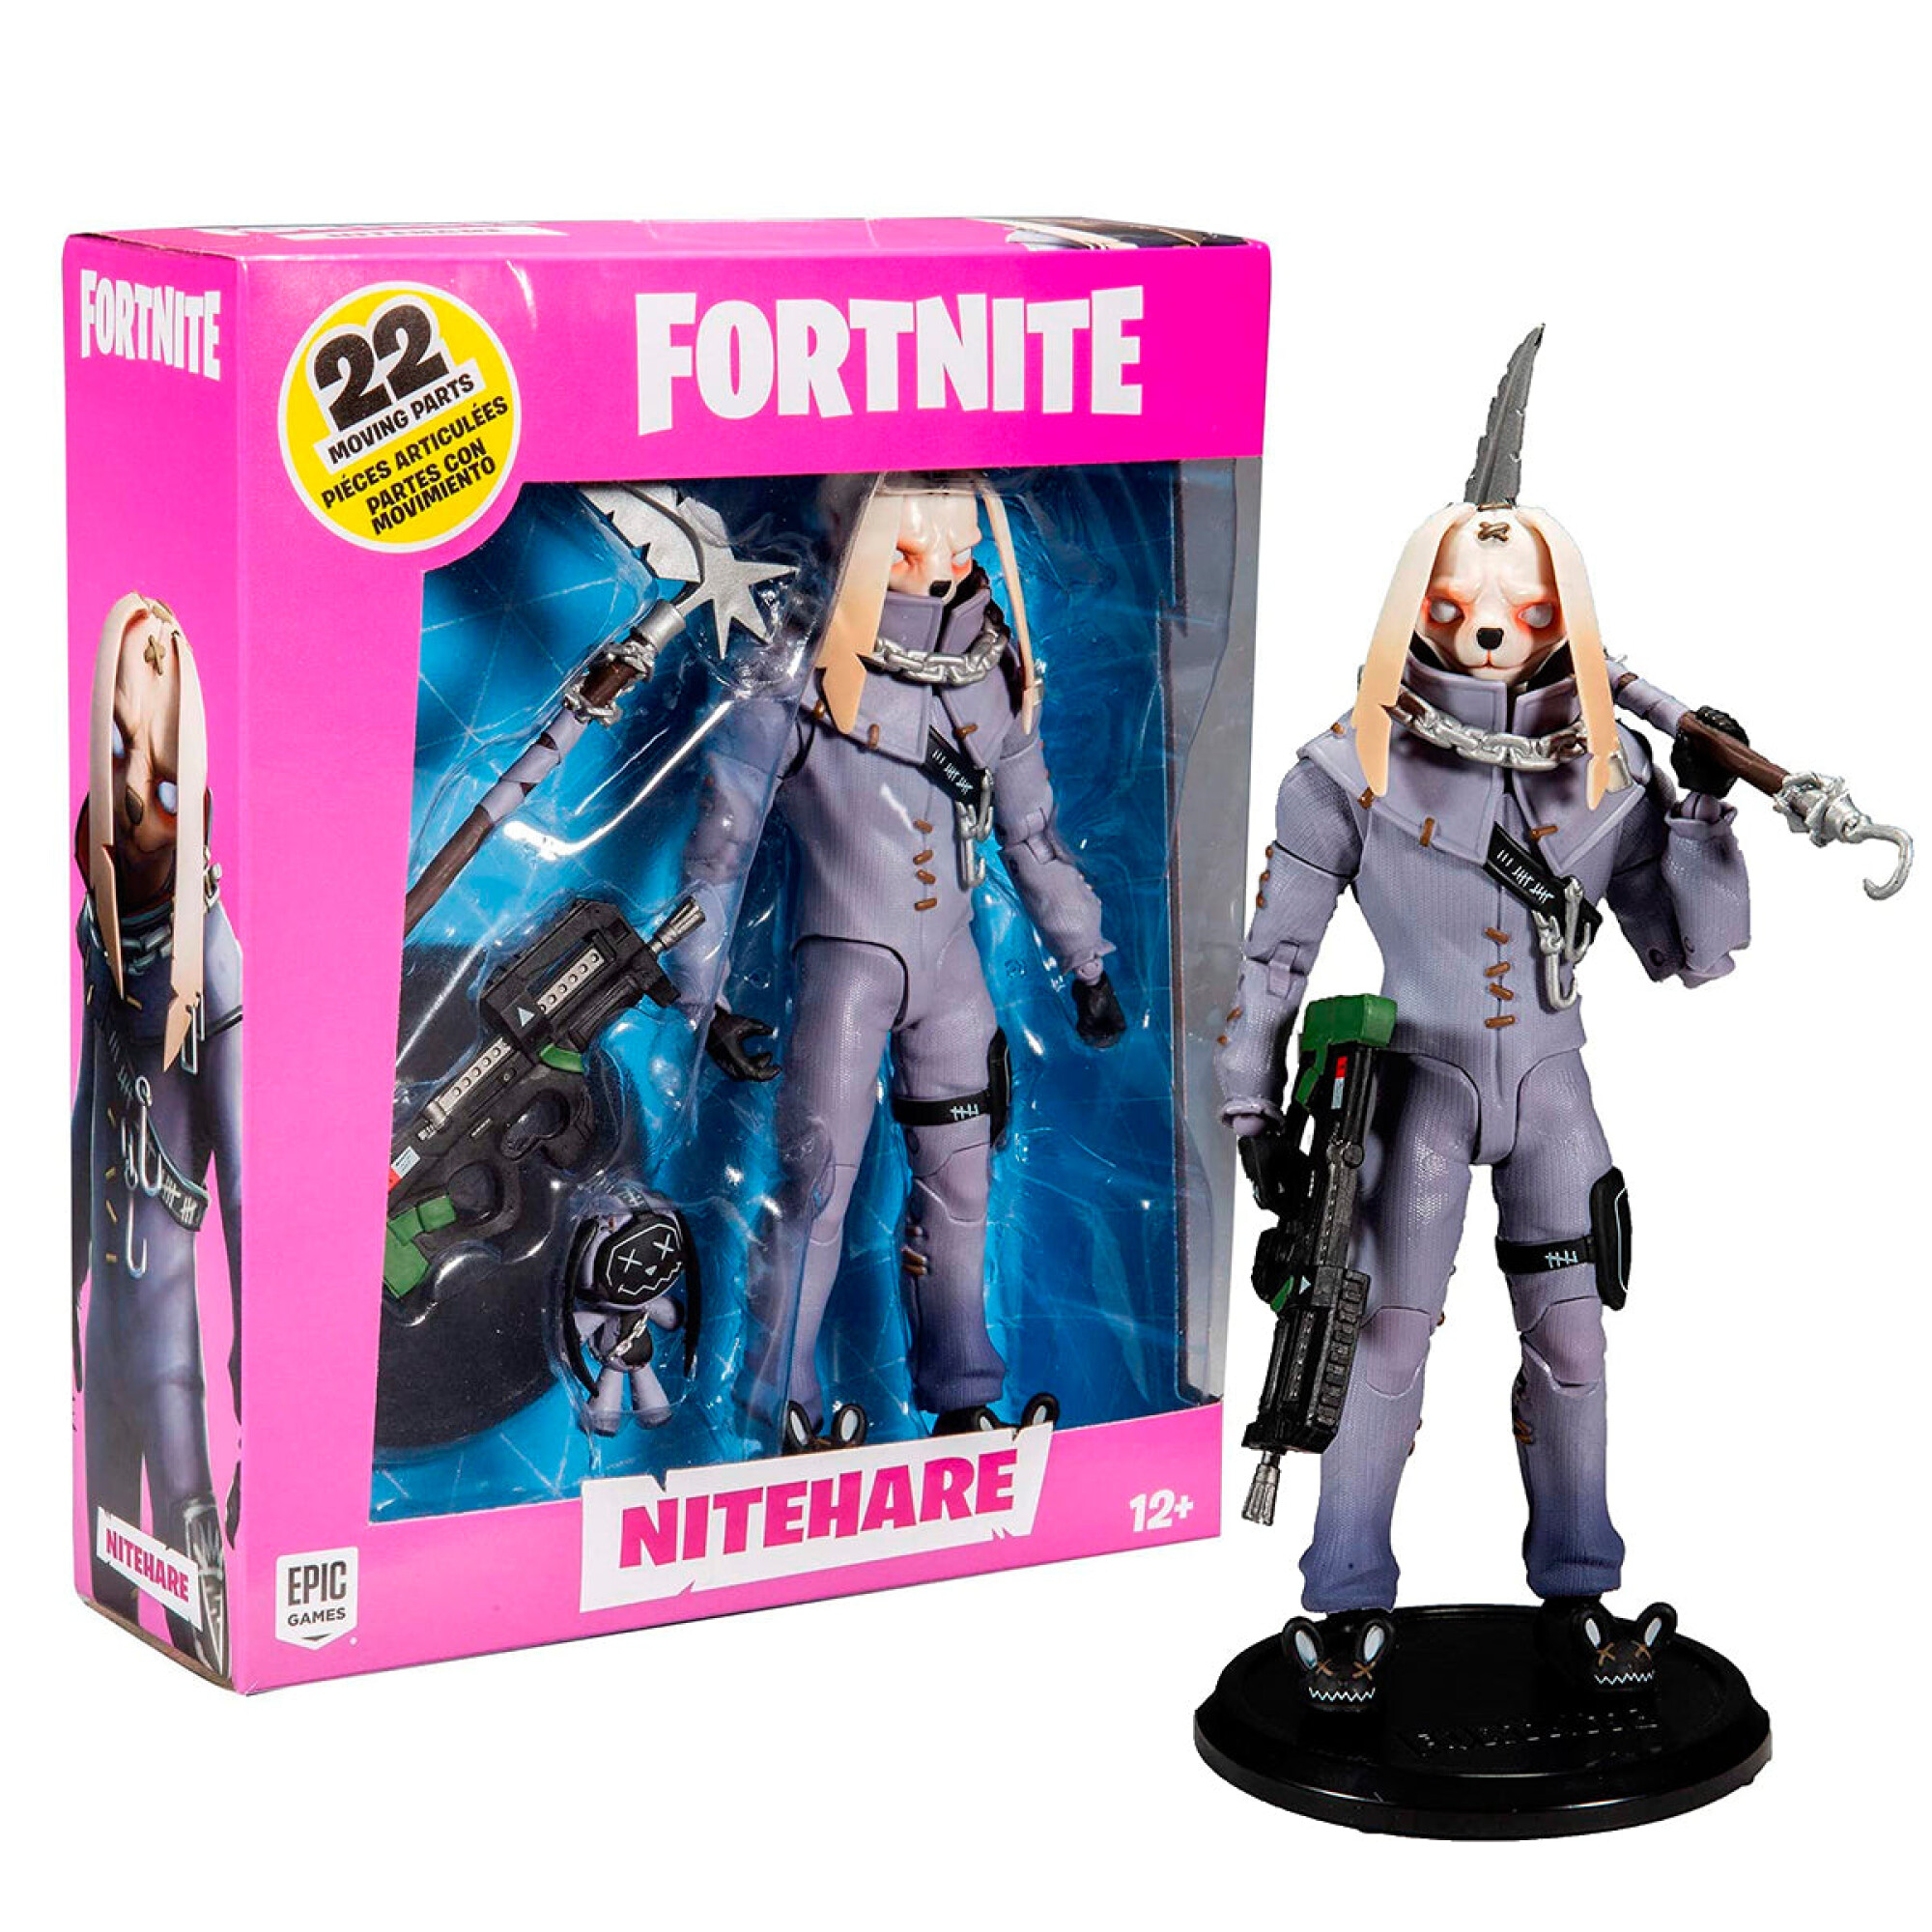 Fortnite Figuras Articuladas 17cm Varios Modelos - Nitehare — El Rey del  entretenimiento